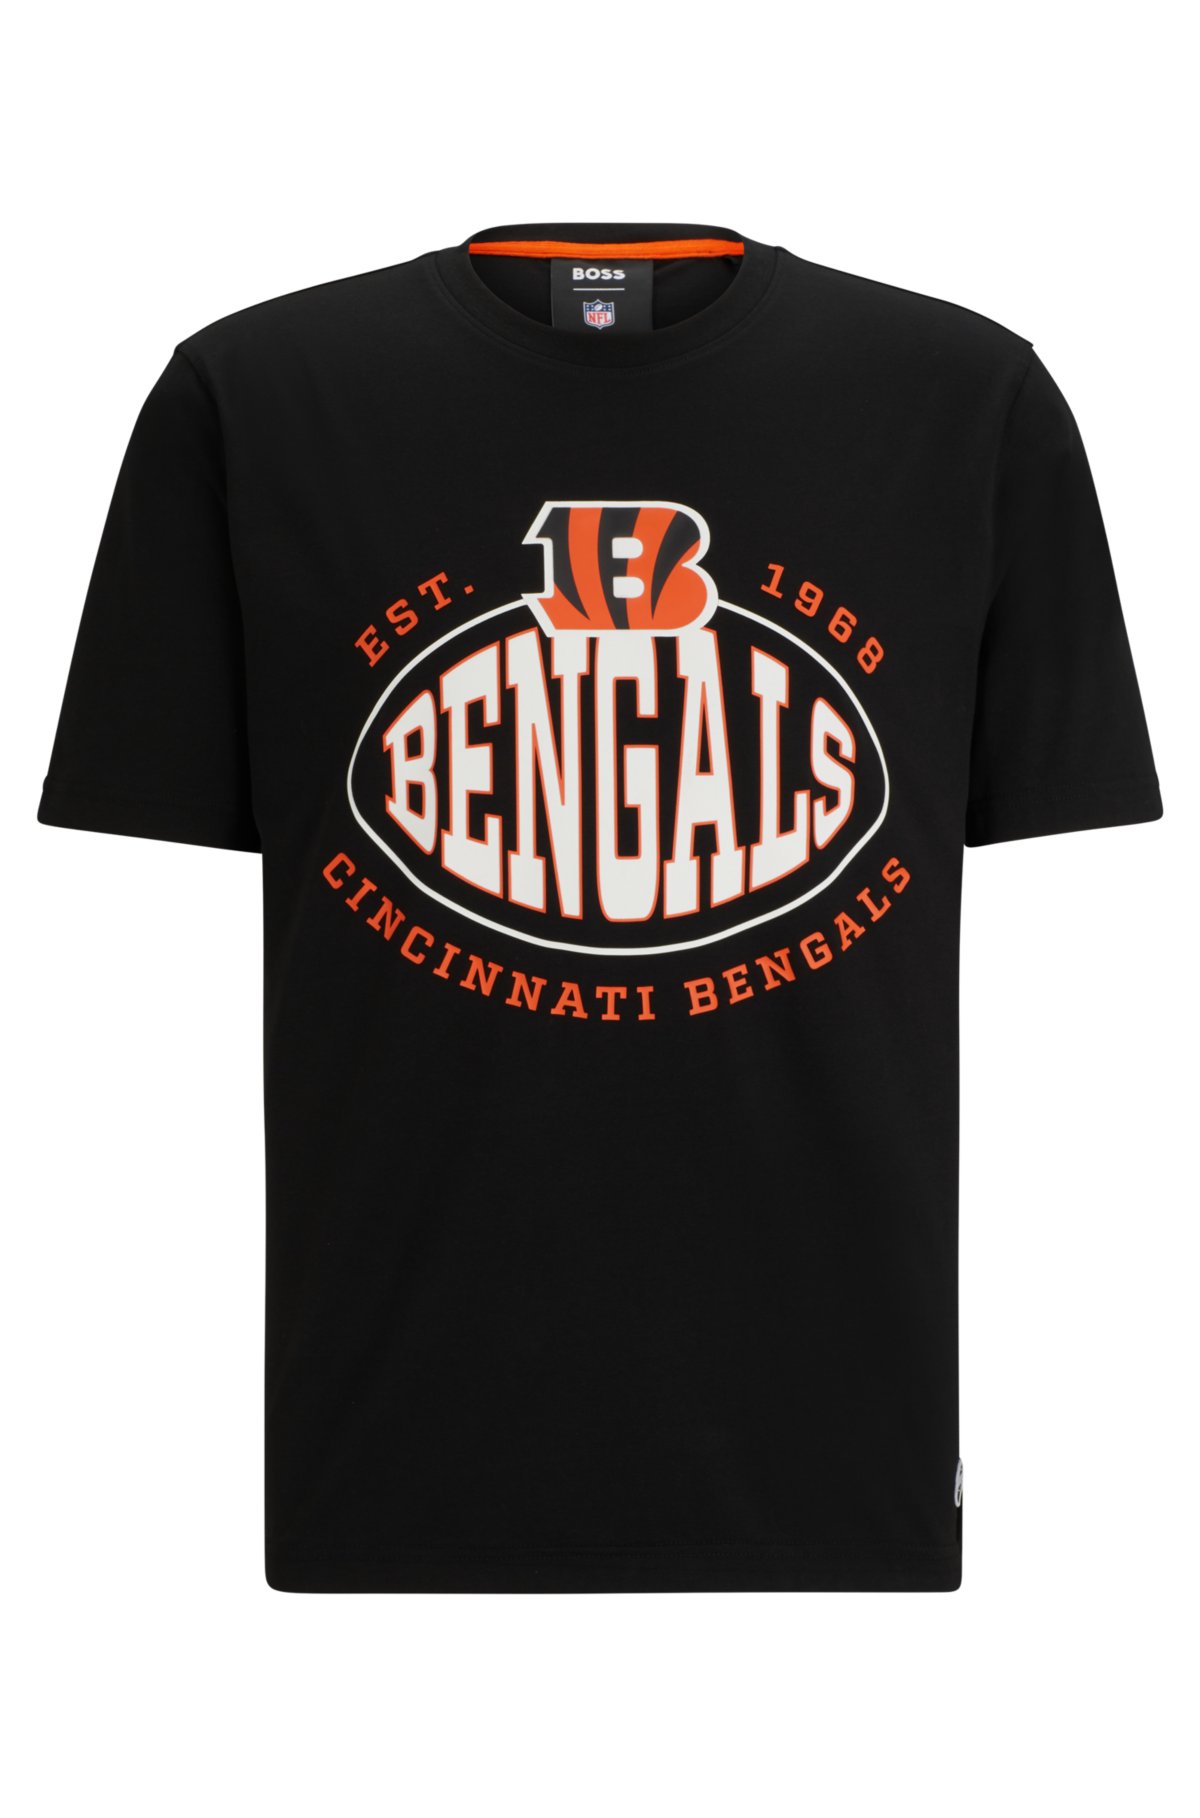 Men's Boss x NFL Black Cincinnati Bengals Trap T-Shirt Size: Medium